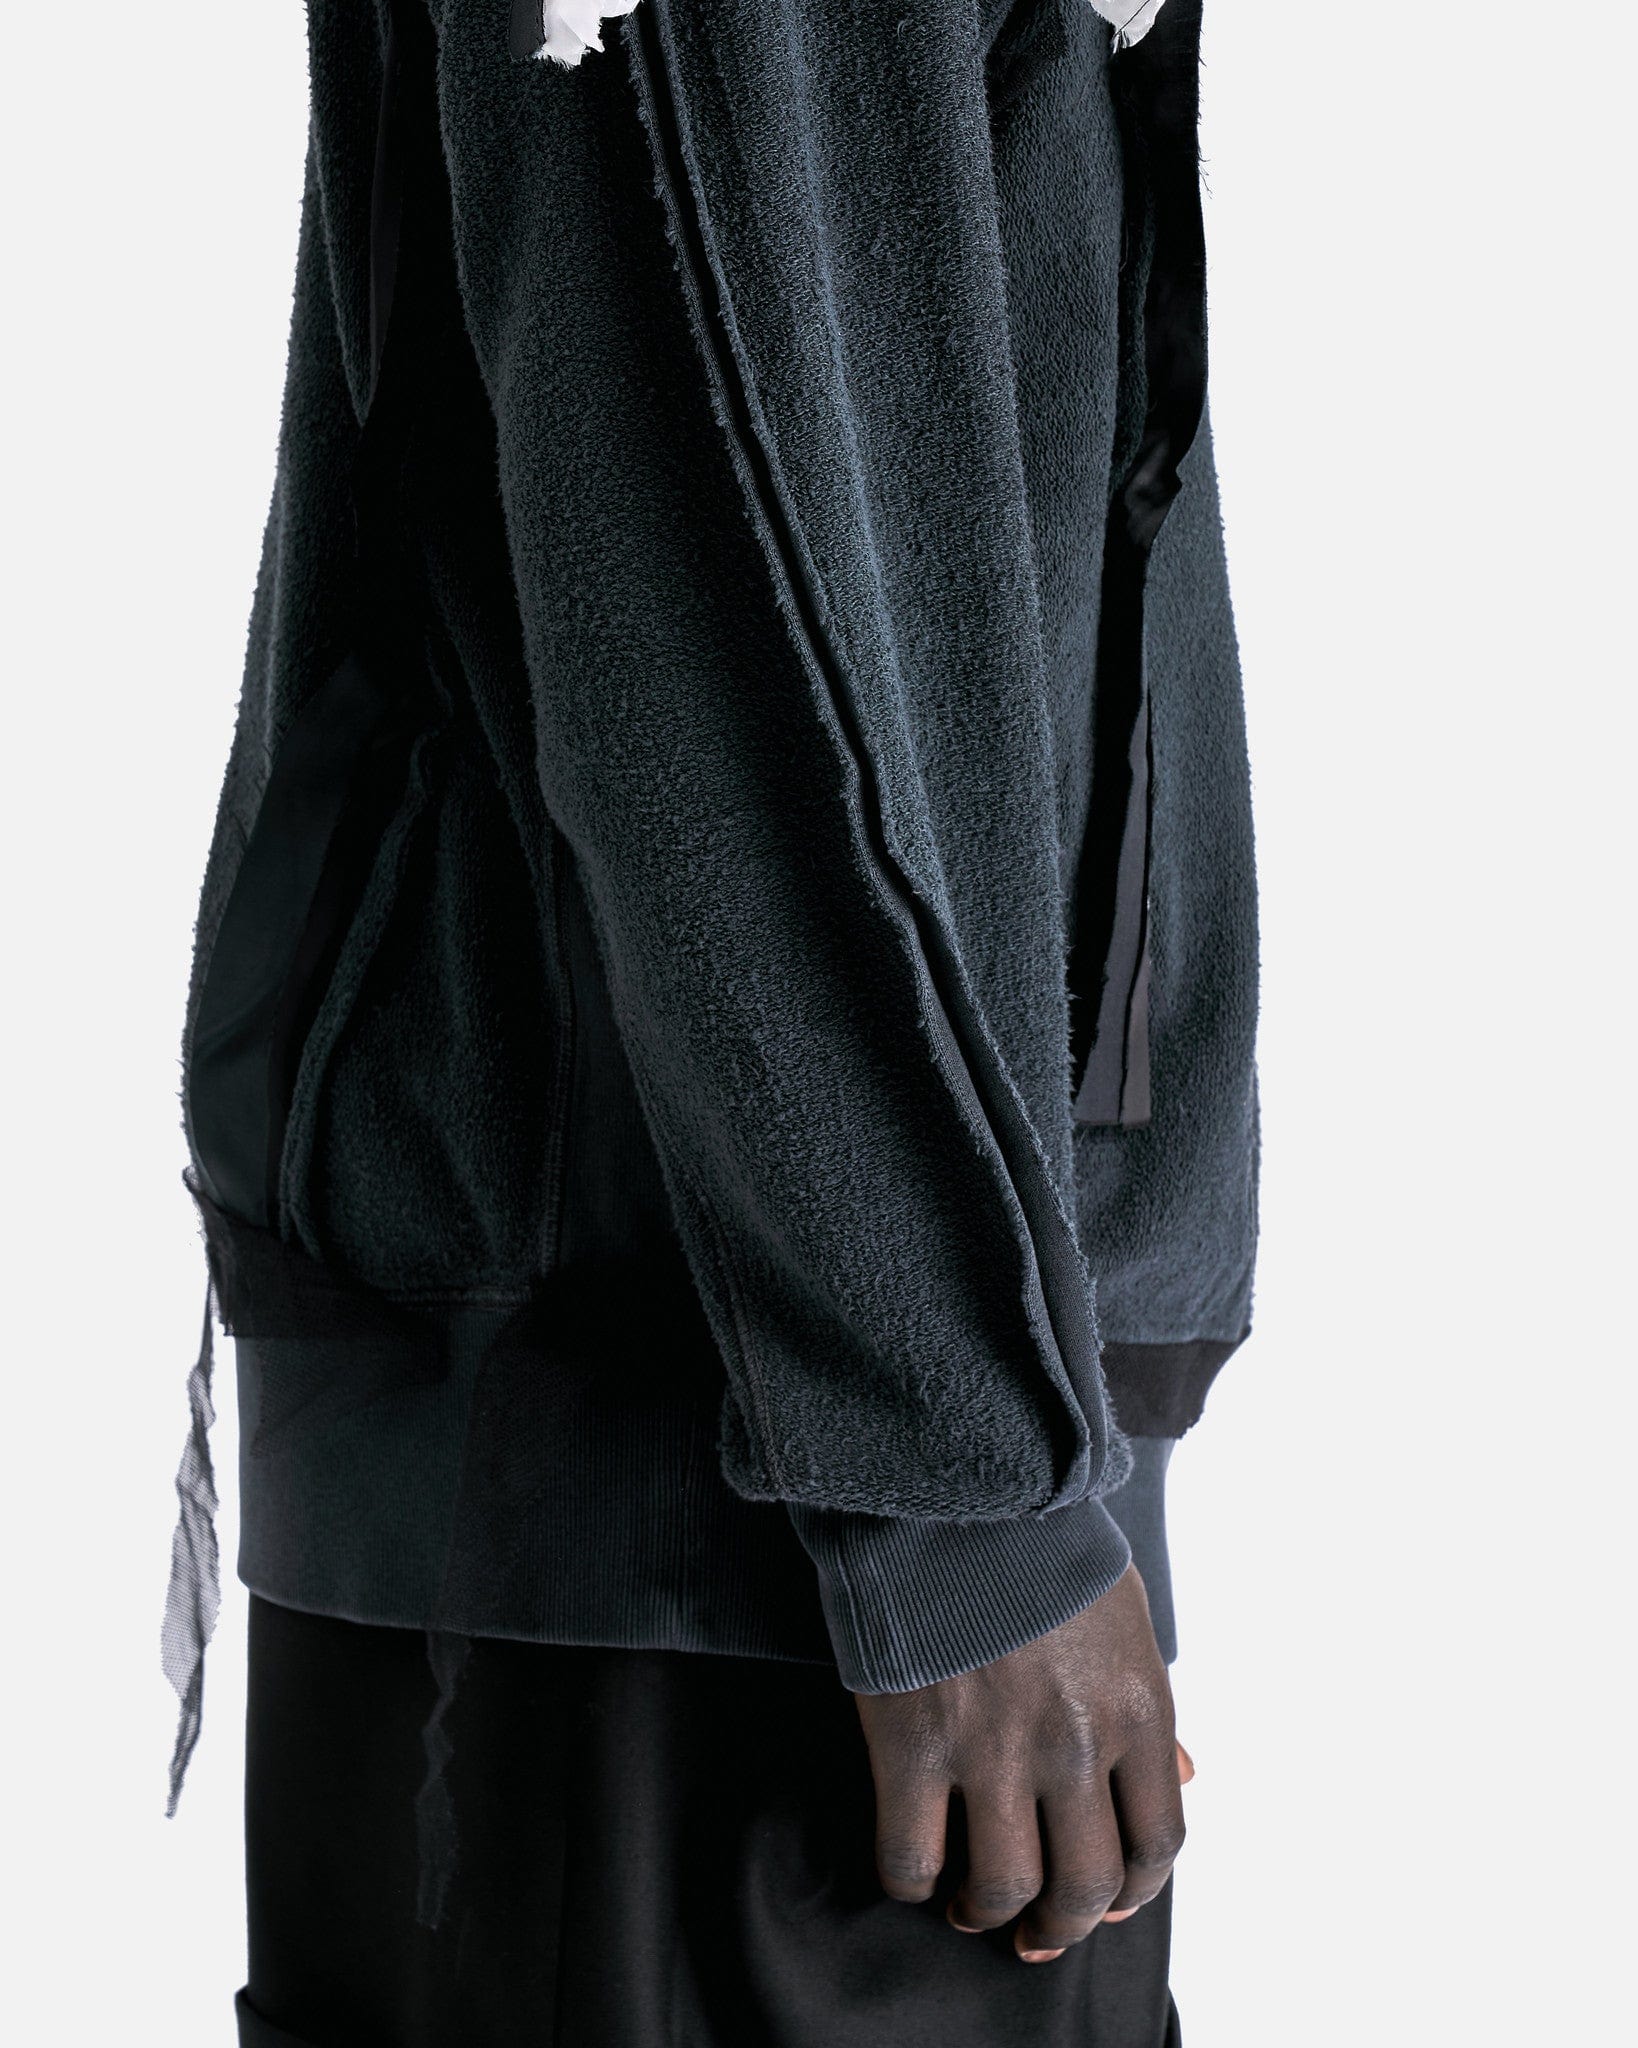 Inside-Out Spliced Cotton Fleece Sweatshirt in Charcoal